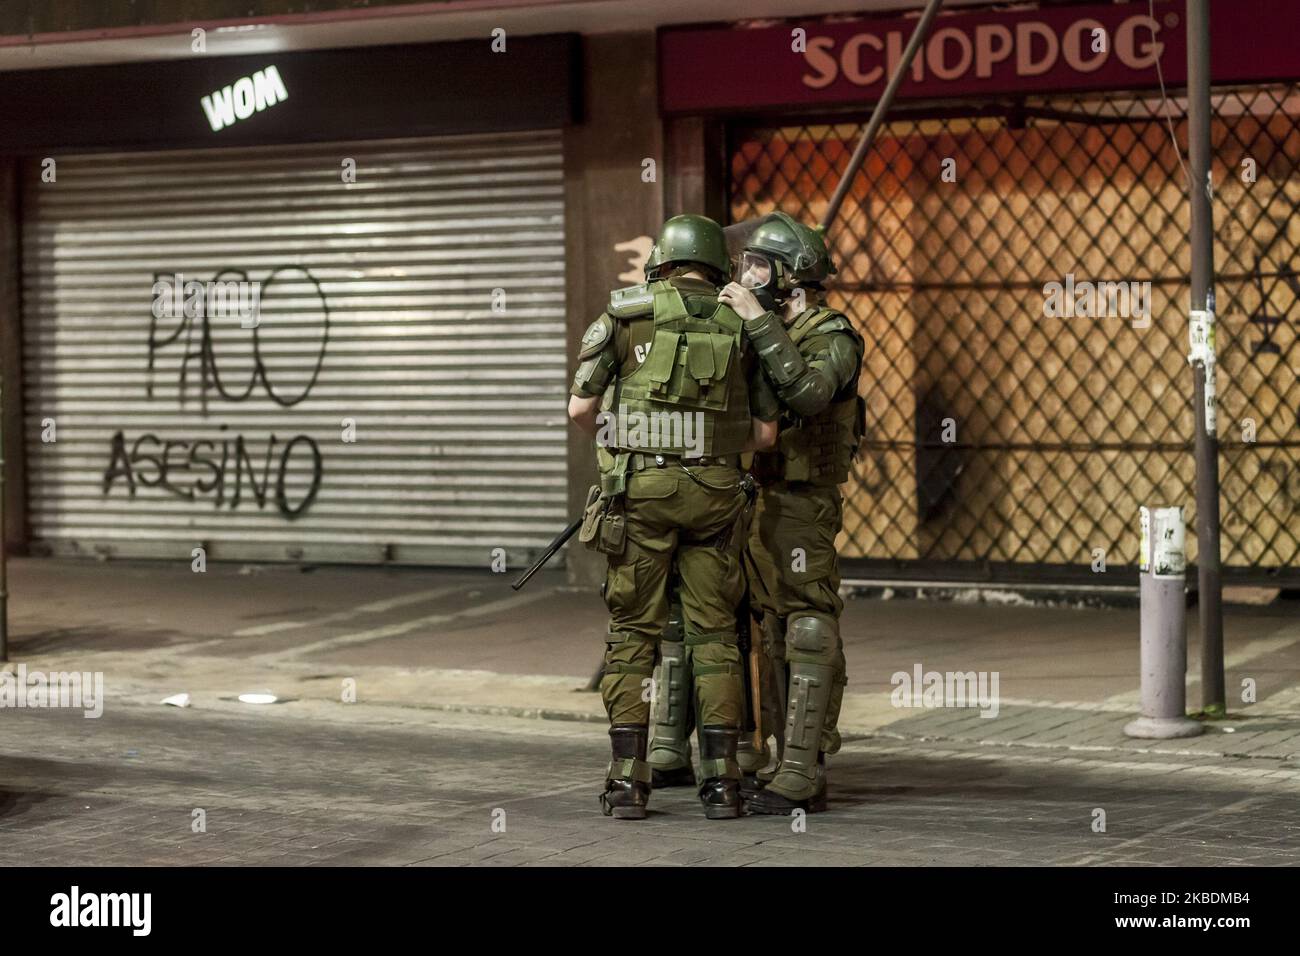 Osorno, Chile. 30. Dezember 2019. Polizeigespräch während der Demonstration, auf einer Seite kann man an der Wand lesen: paco (Polizei) Mord. Die jüngsten Demonstrationen und Proteste des Jahres werden von der Bereitschaftspolizei stark unterdrückt. Human Rights Watch sagte, dass die chilenische Nationalpolizei (Carabineros) schwere Menschenrechtsverletzungen begangen habe, Dazu gehören exzessiver Einsatz von Gewalt auf den Straßen und Misshandlungen in Haft nach massiven Protesten, die am 18. Oktober 2019 begannen und bis heute in Osorno, Chile, andauern. (Foto von Fernando Lavoz/NurPhoto) Stockfoto